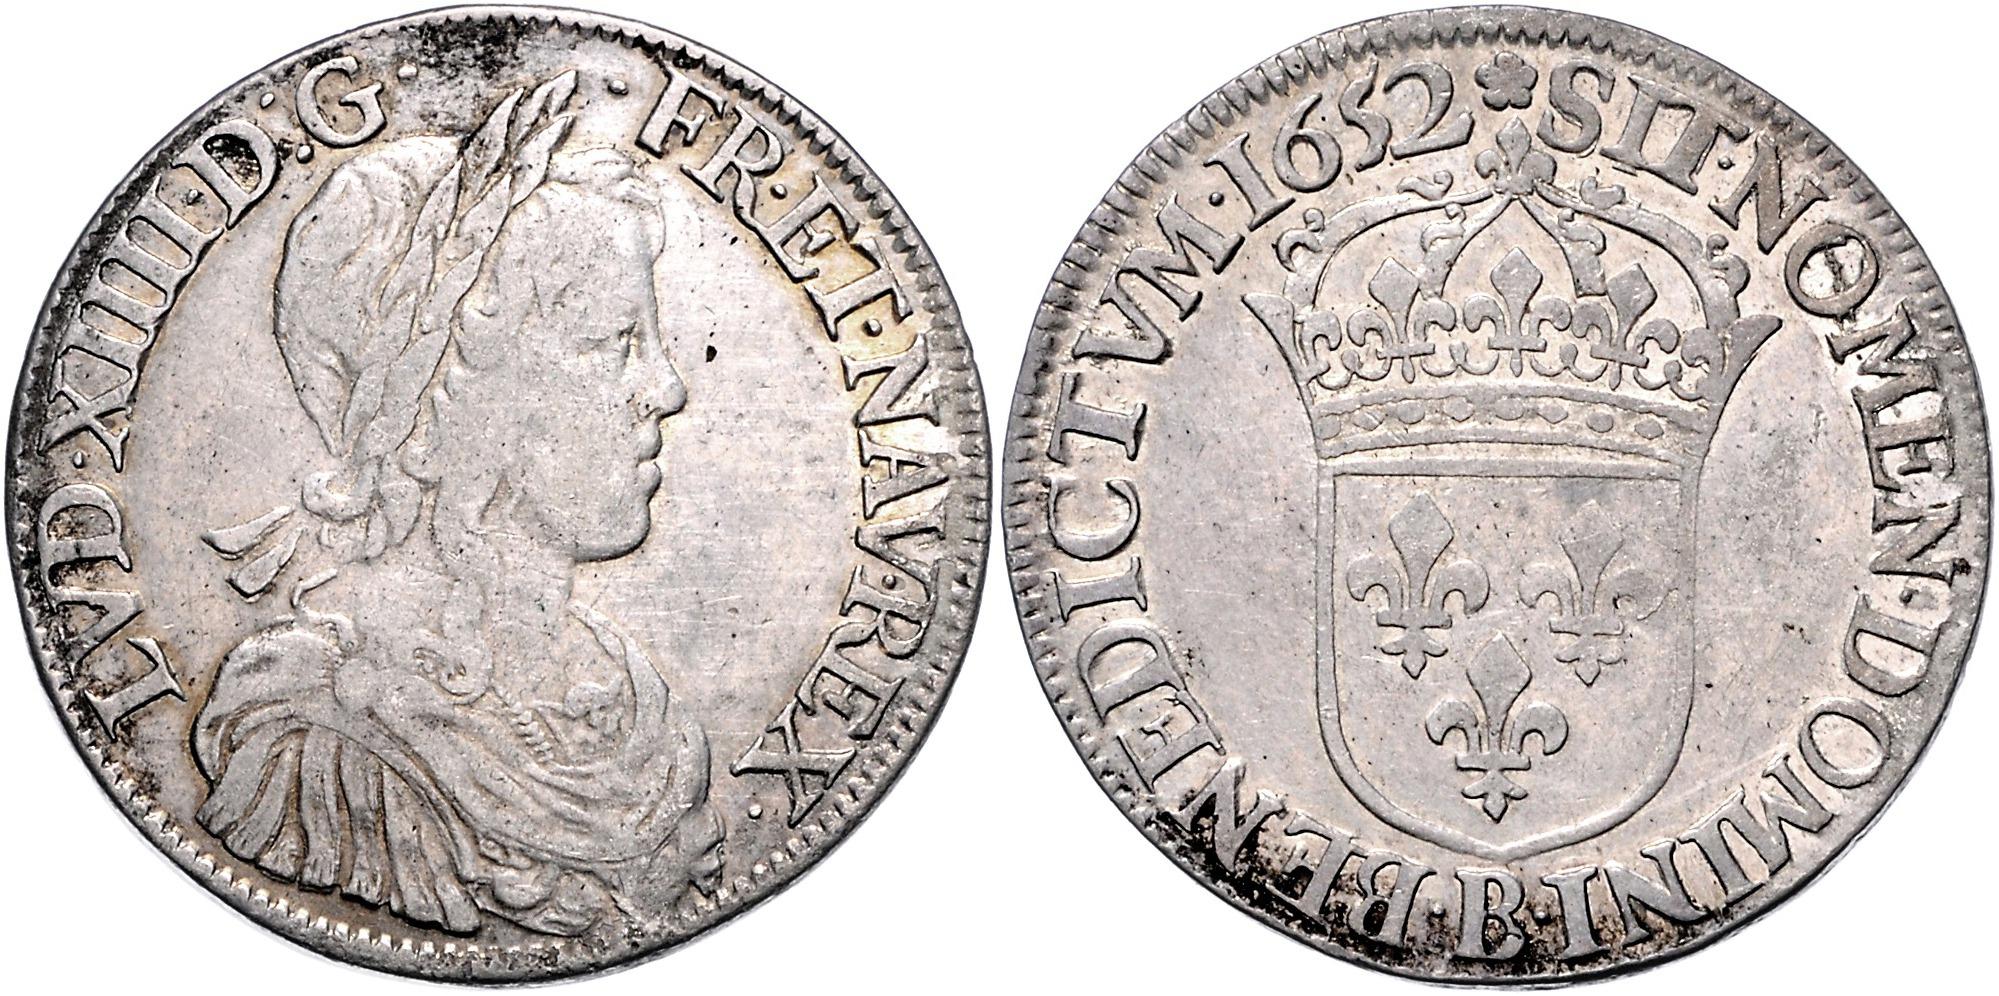 Frankreich, Ludwig XIV. 1643-1715 - Münzen, Medaillen und Papiergeld ...